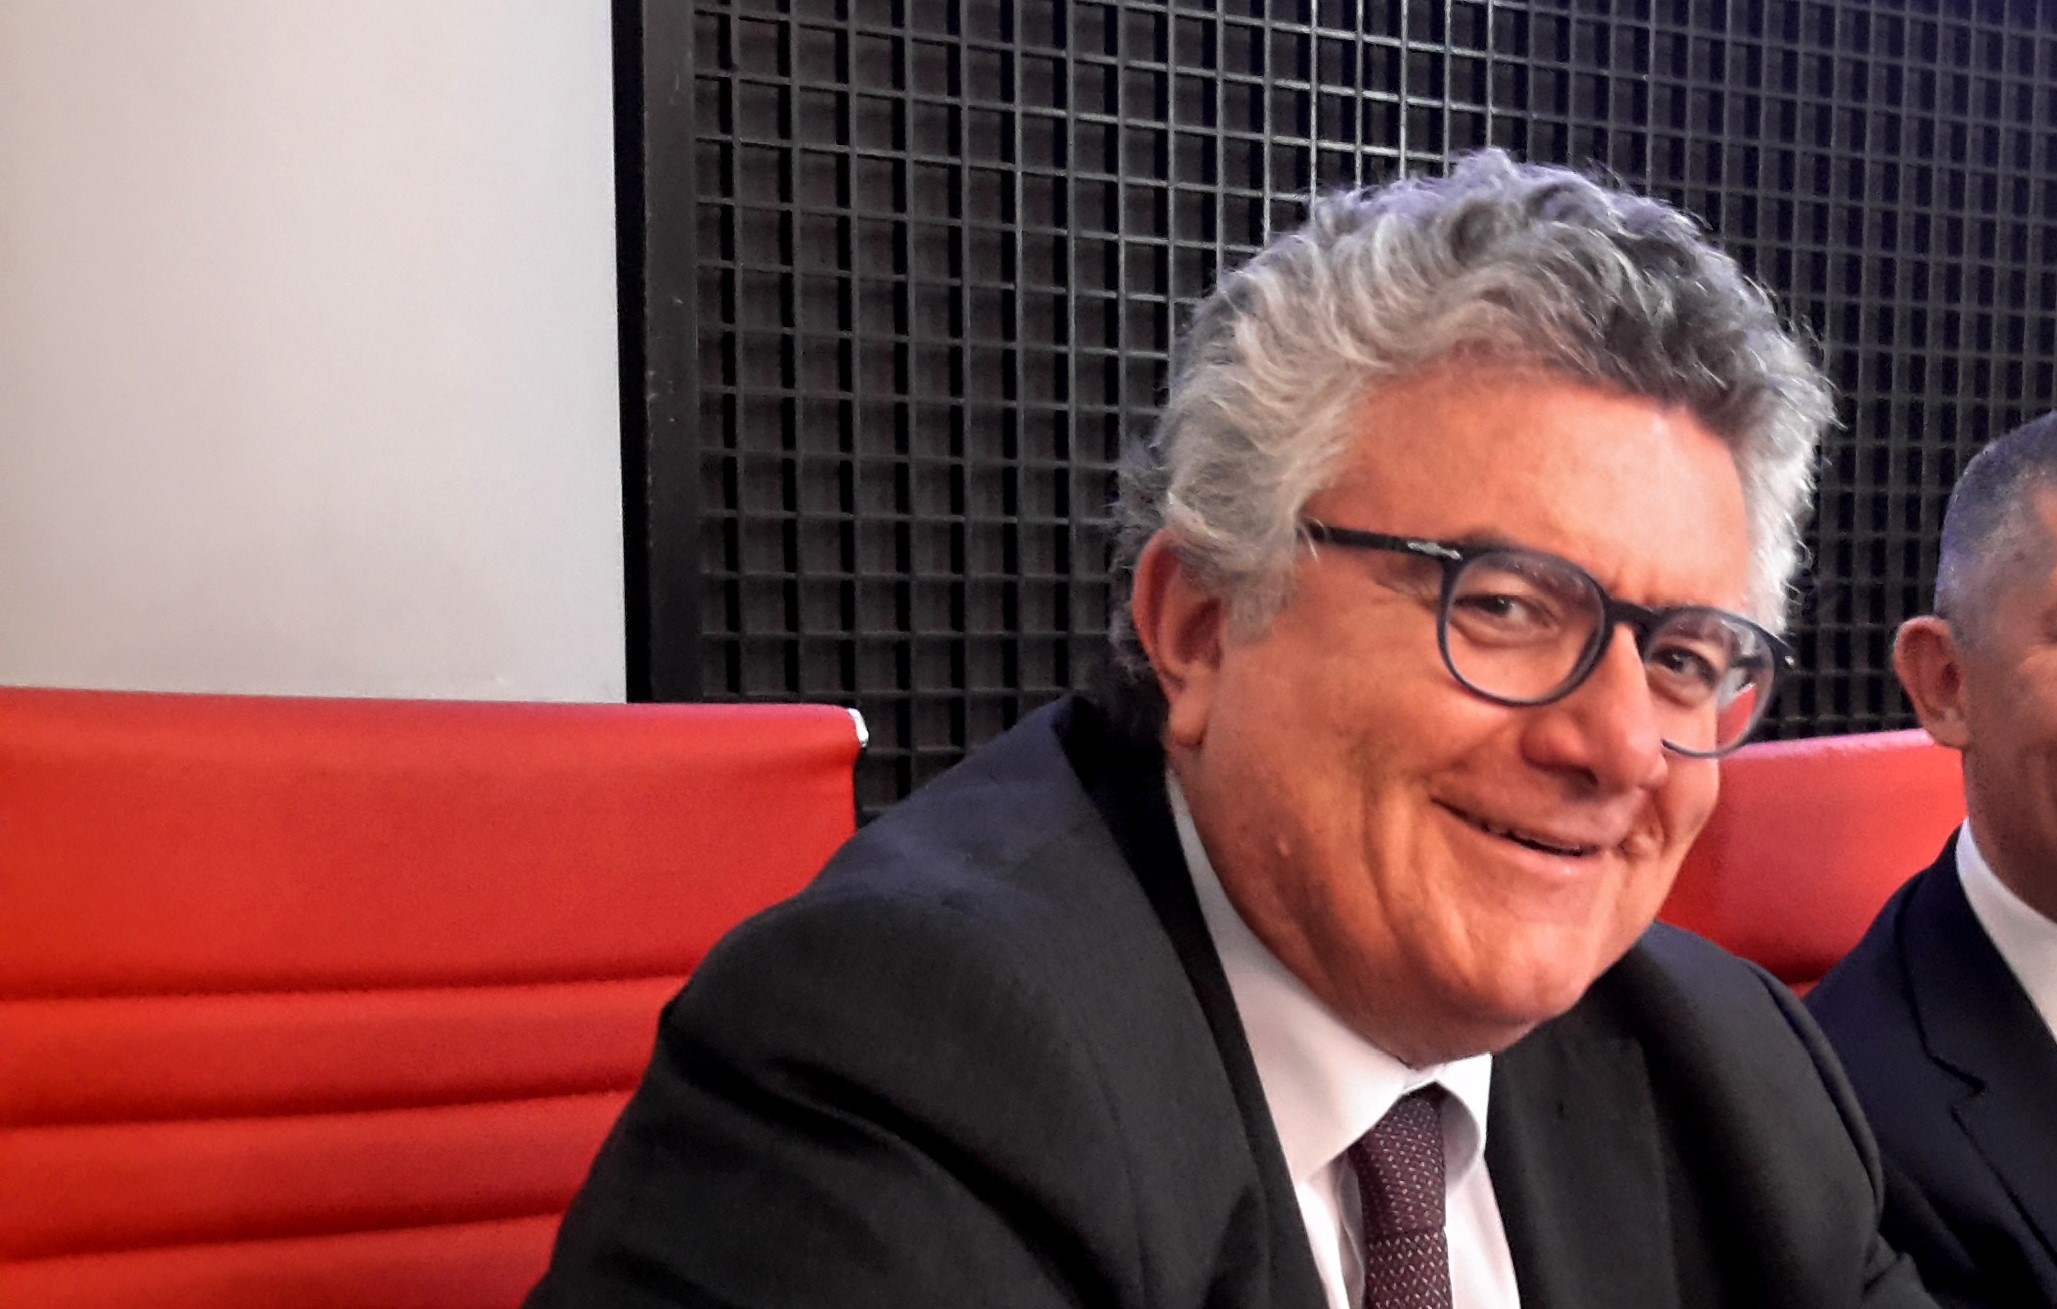  Roadshow “Italia per le imprese, con le PMI verso i mercati esteri” la dichiarazione dell’Assessore Lepore